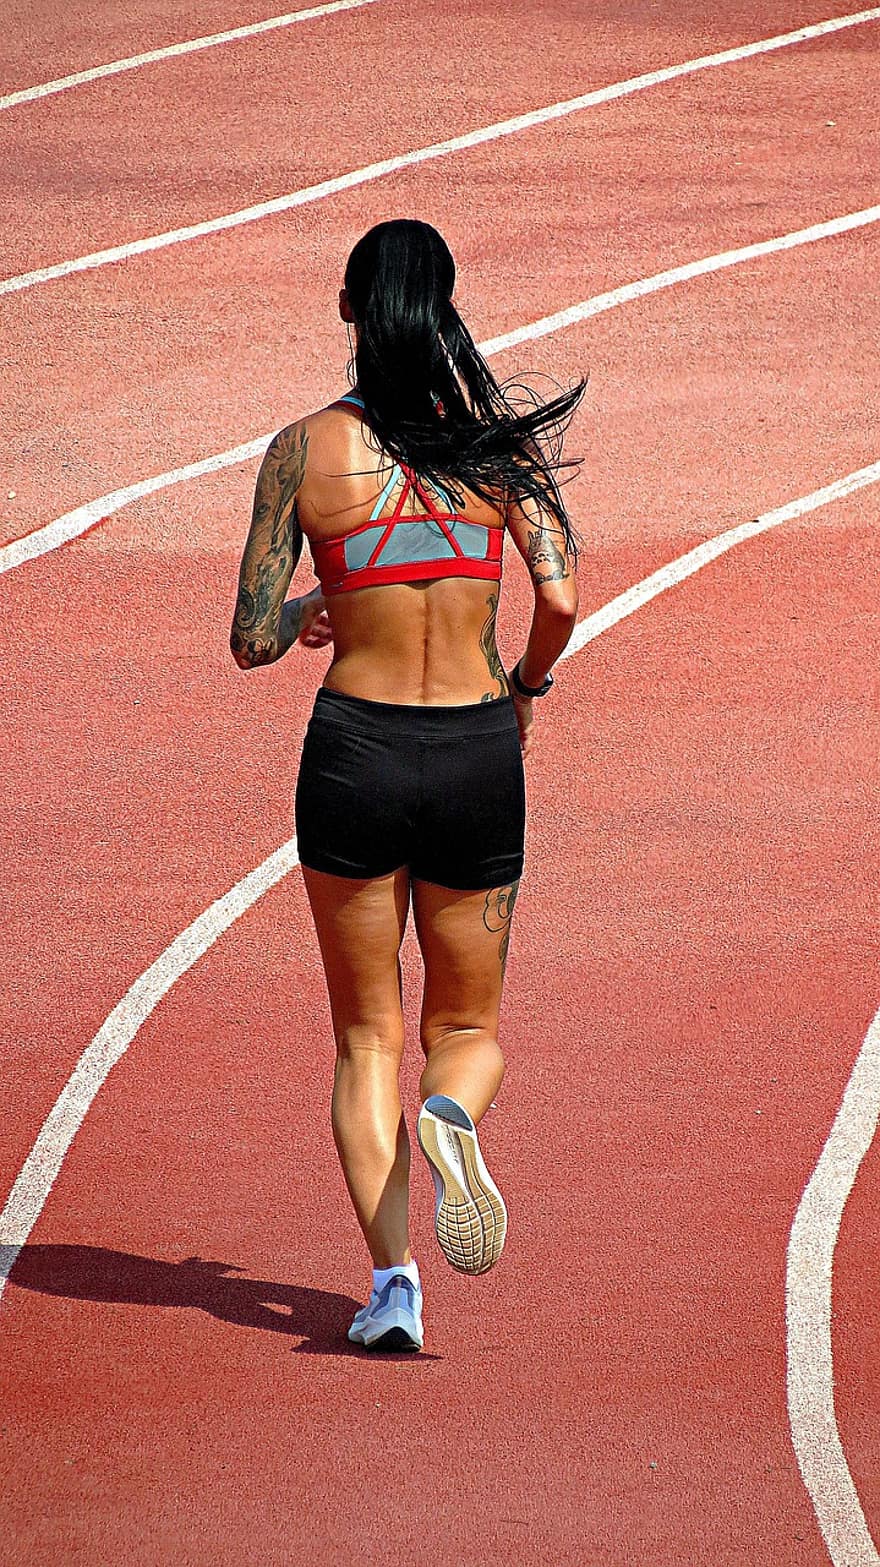 correre, fitness, pista da corsa, donna, gli sport, benessere, esercizio, allenarsi, in esecuzione, jogging, sport